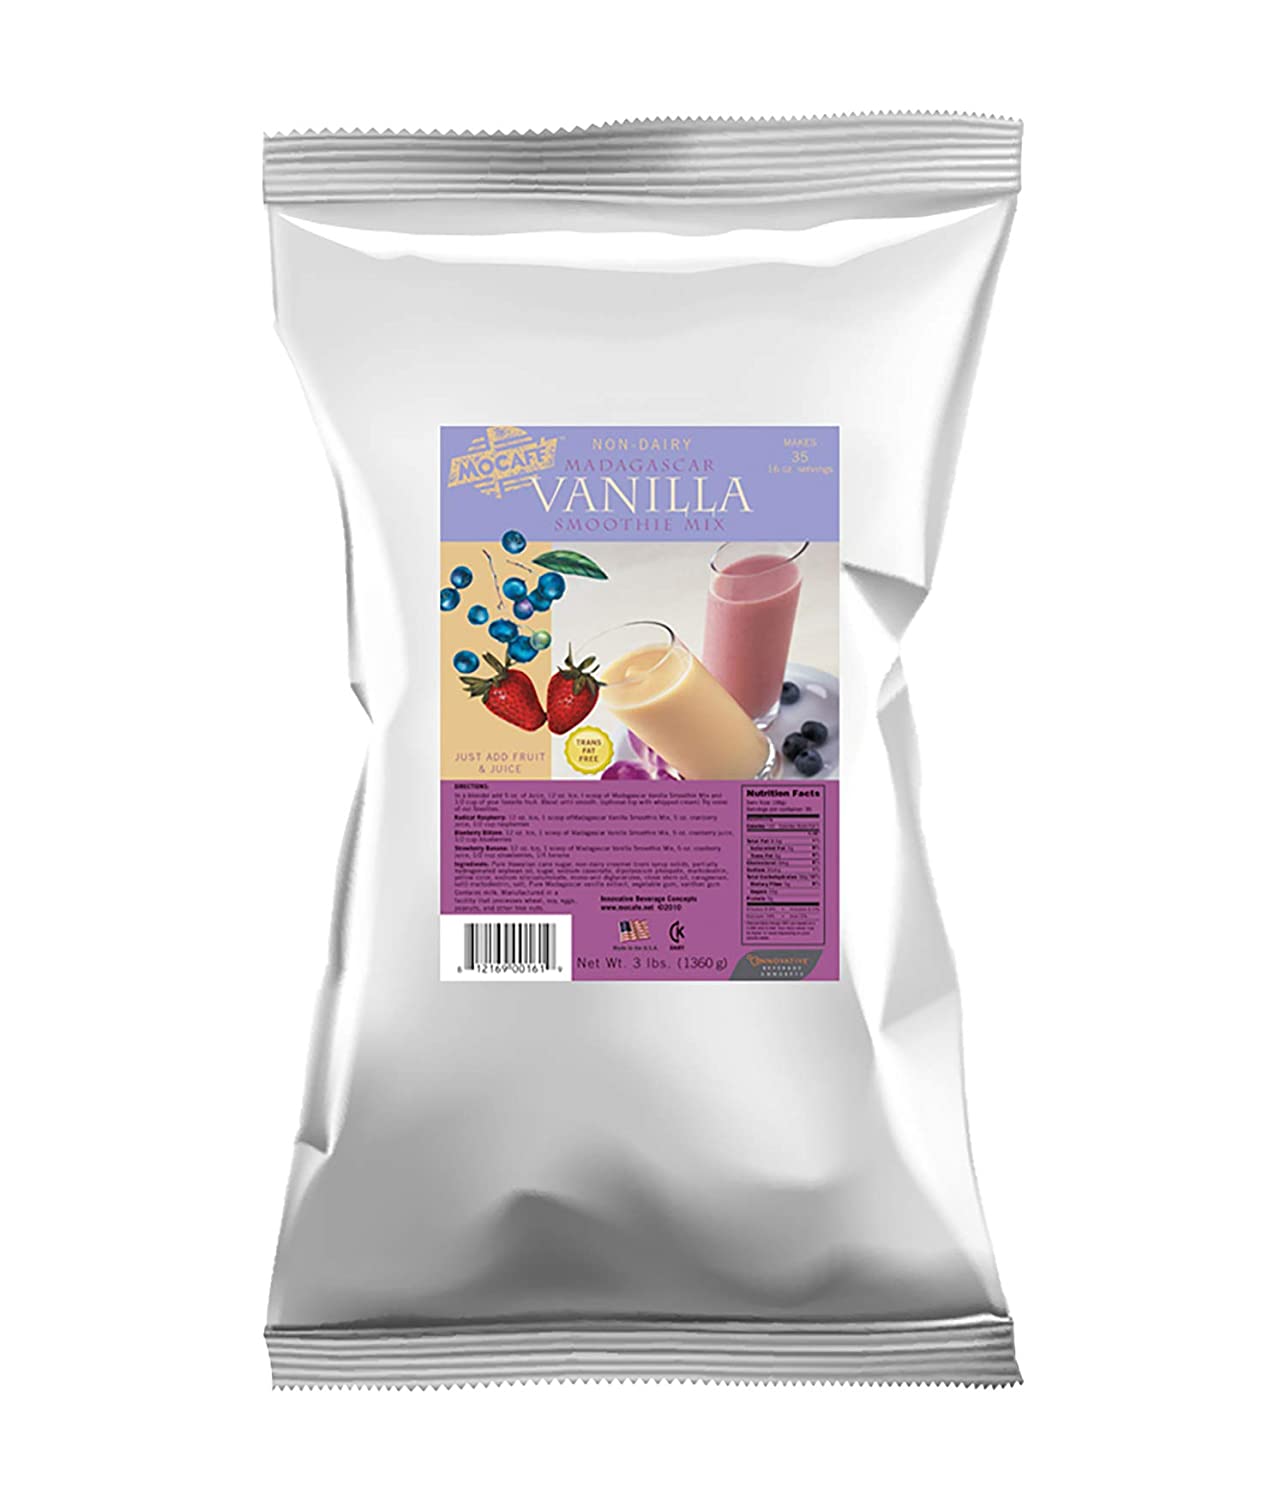 MoCafe - Smoothie Base - 3 lb. Bag: Non-Dairy Madagascar Vanilla